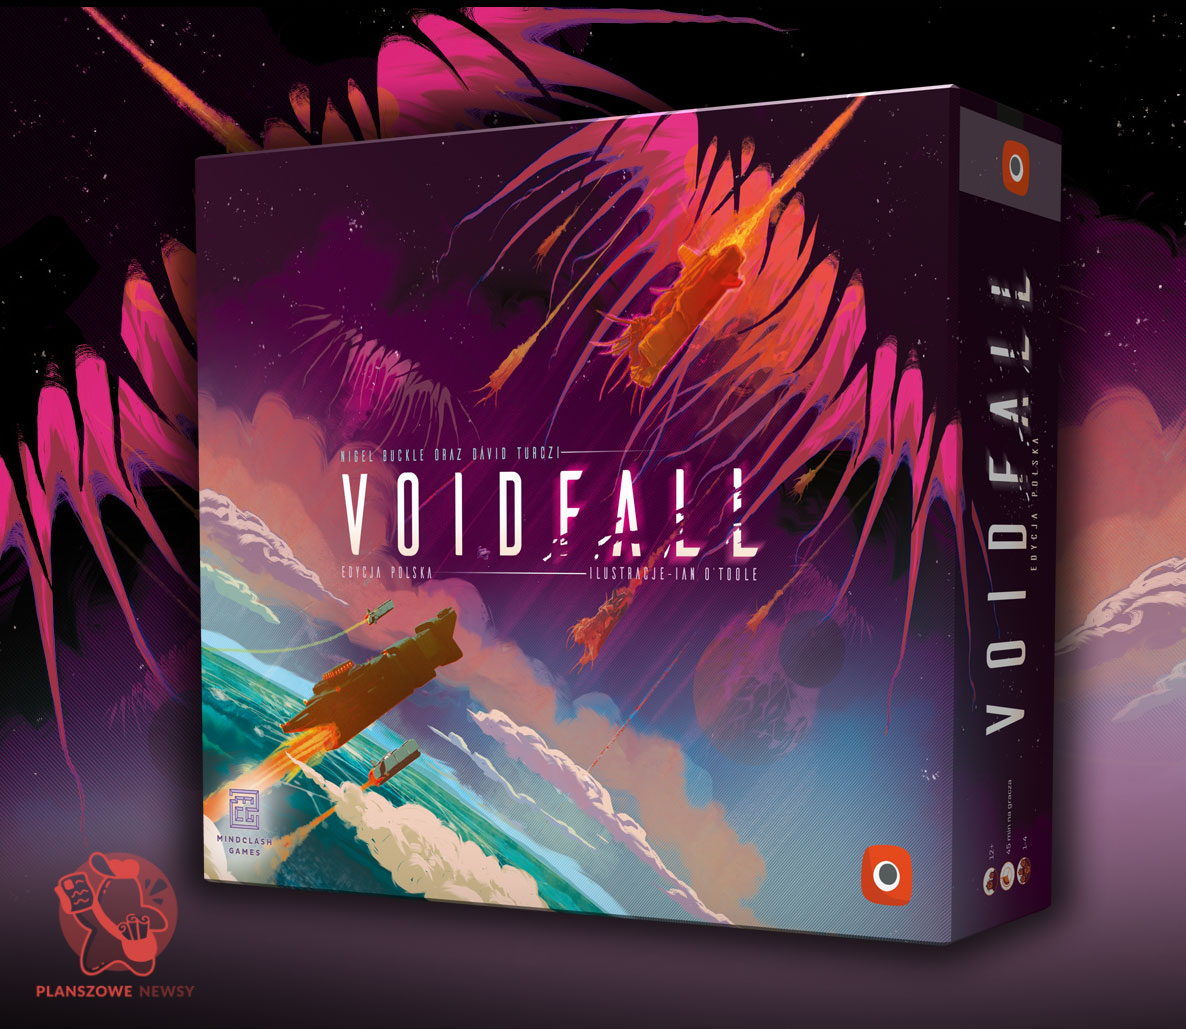 pudełko polskiej edycji gry Voidfall